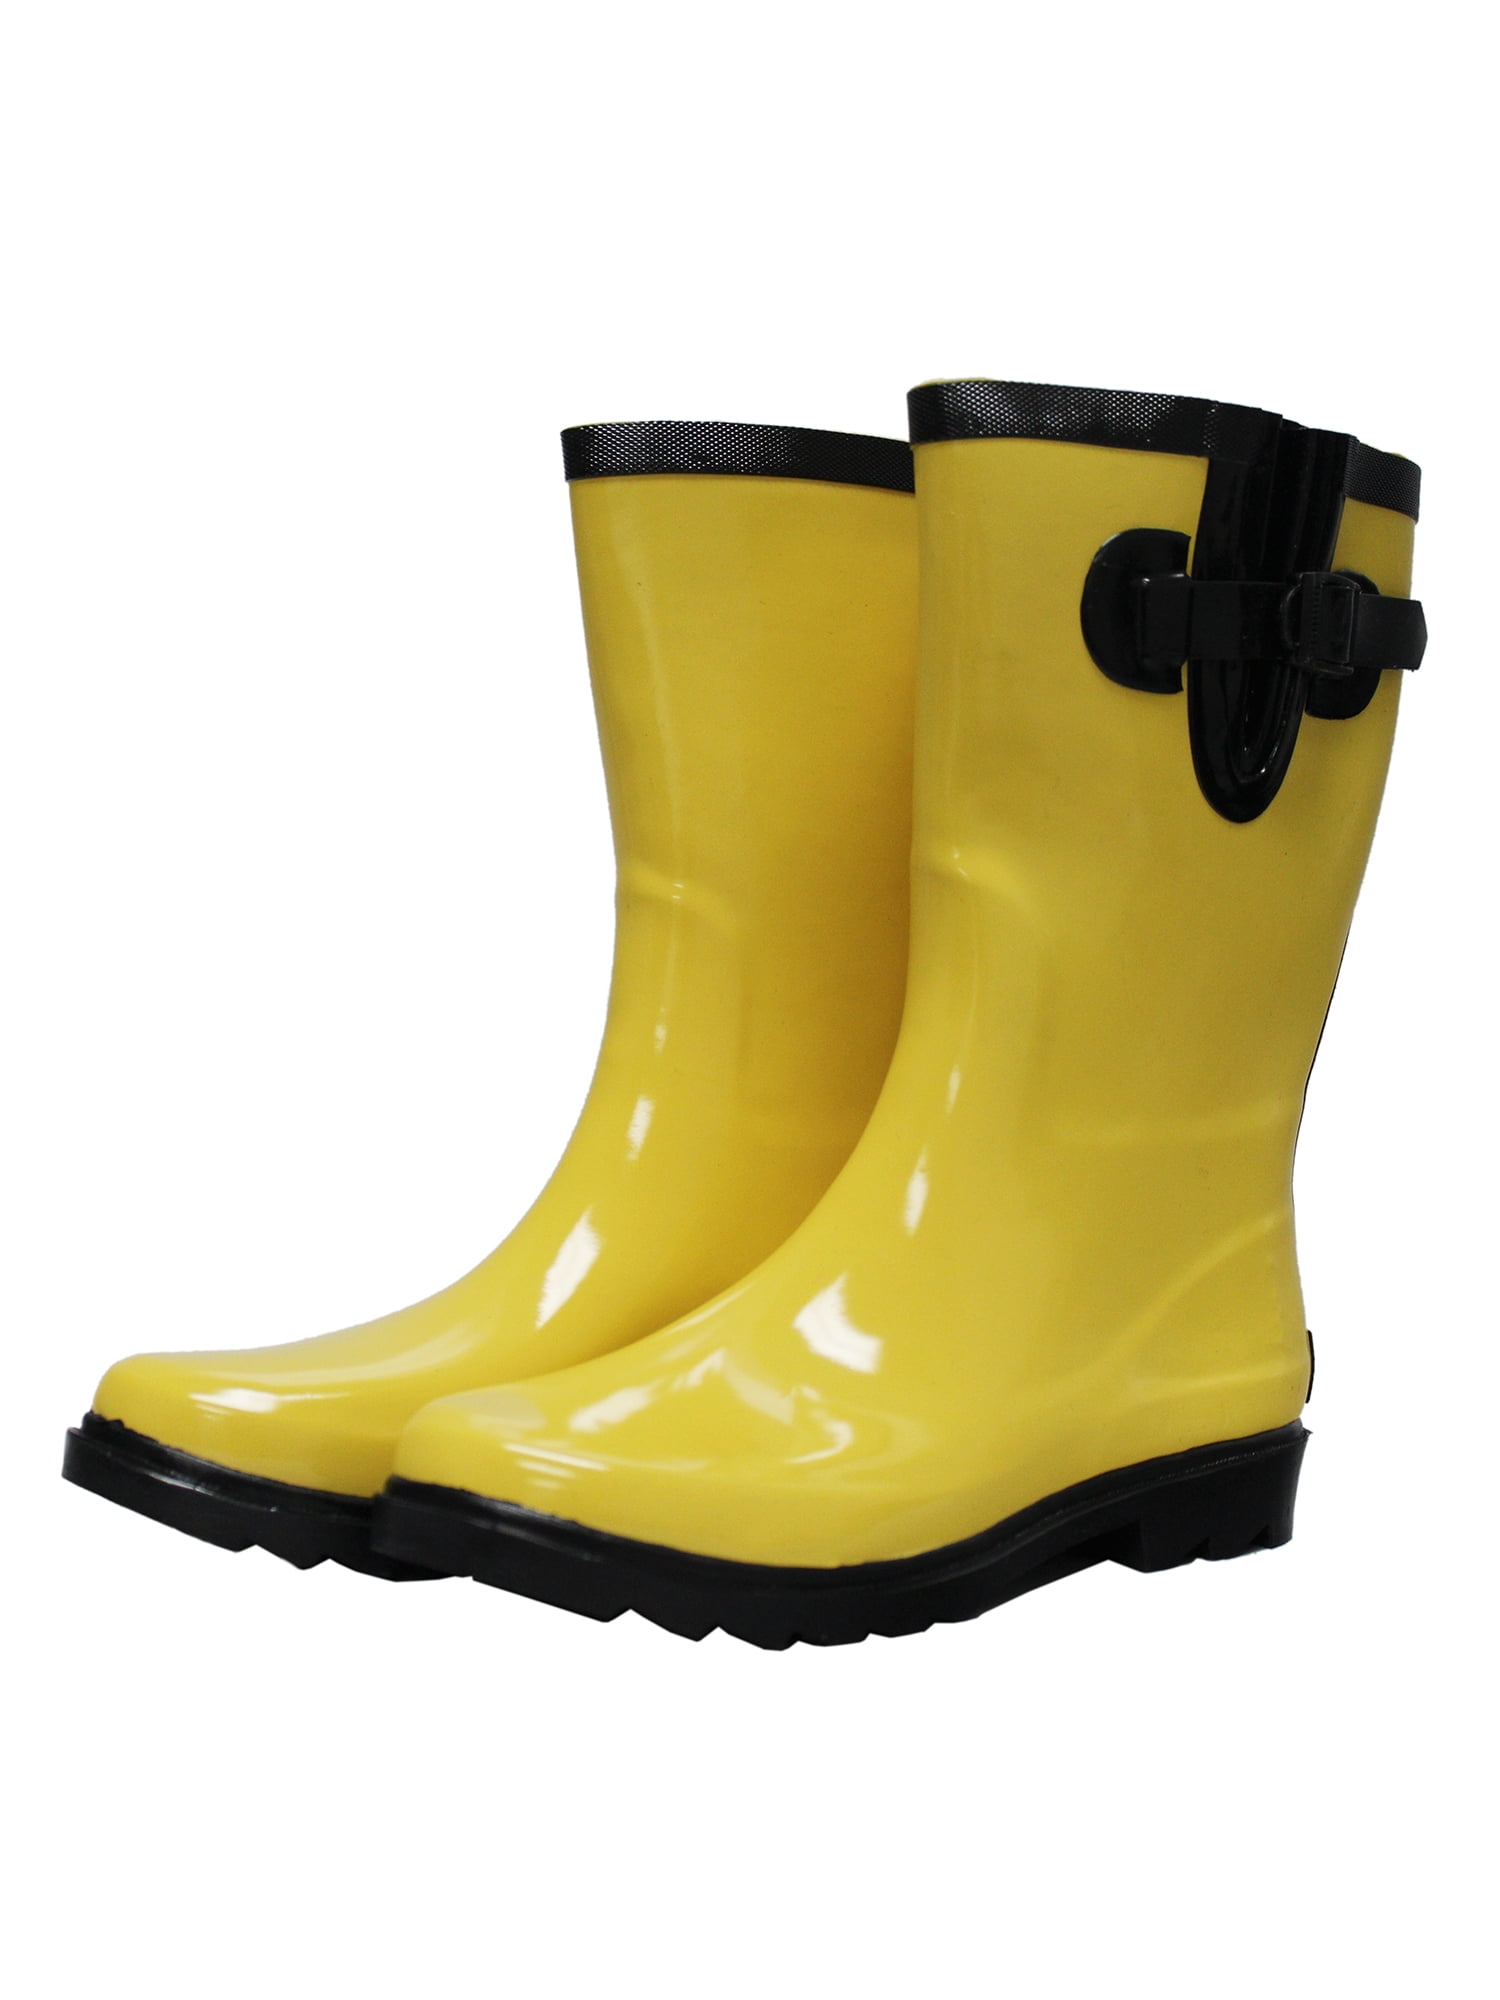 Slip Resistant Rubber Women Rain Boots 